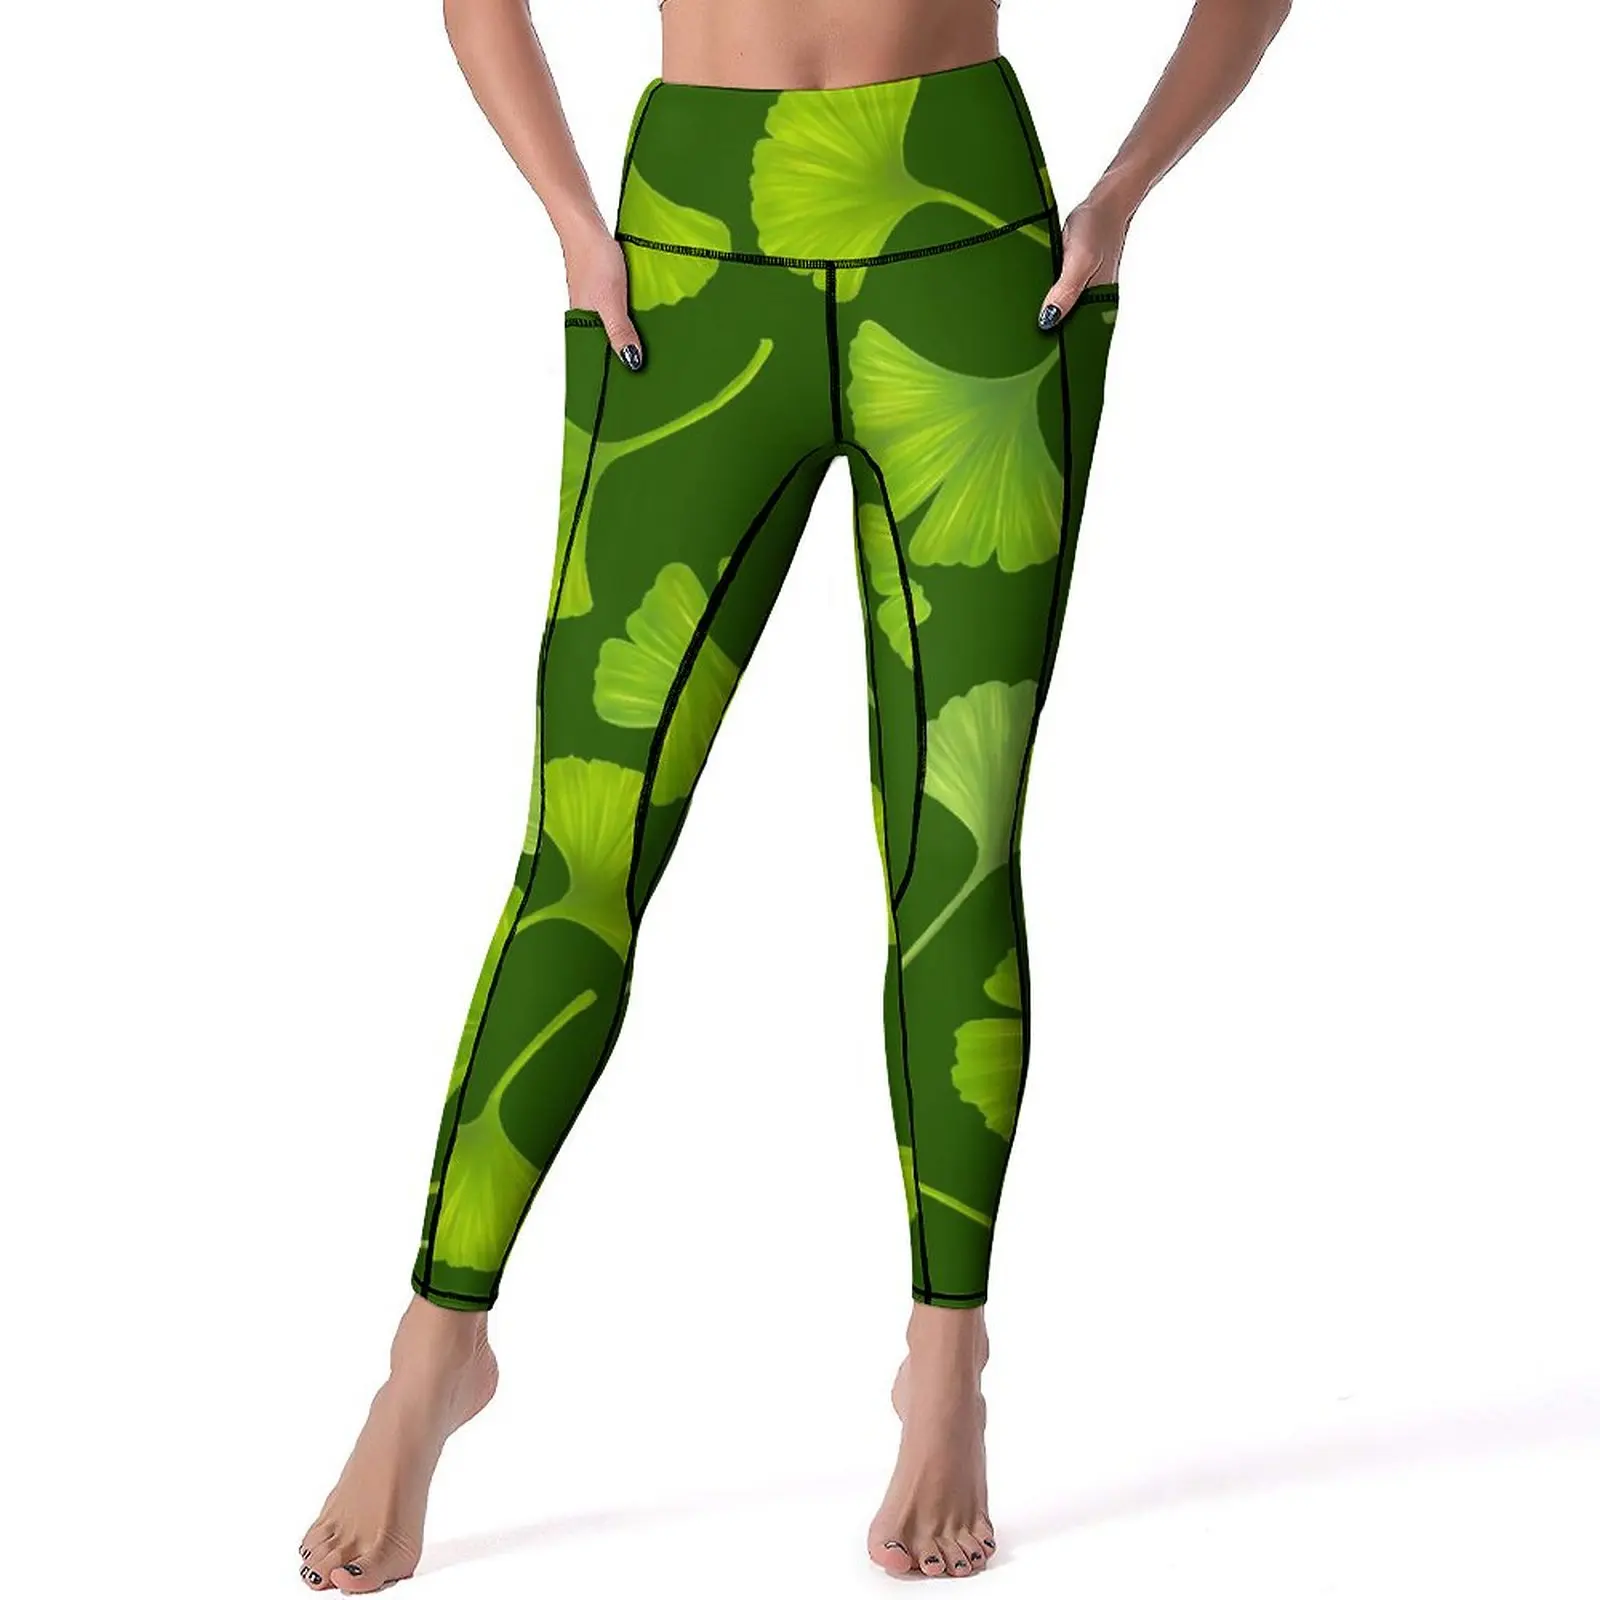 

Зеленые Леггинсы Ginko Biloba с принтом листьев, штаны для фитнеса, спортзала, йоги, модные леггинсы с высокой талией, эластичные спортивные колготки с графическим принтом, подарок